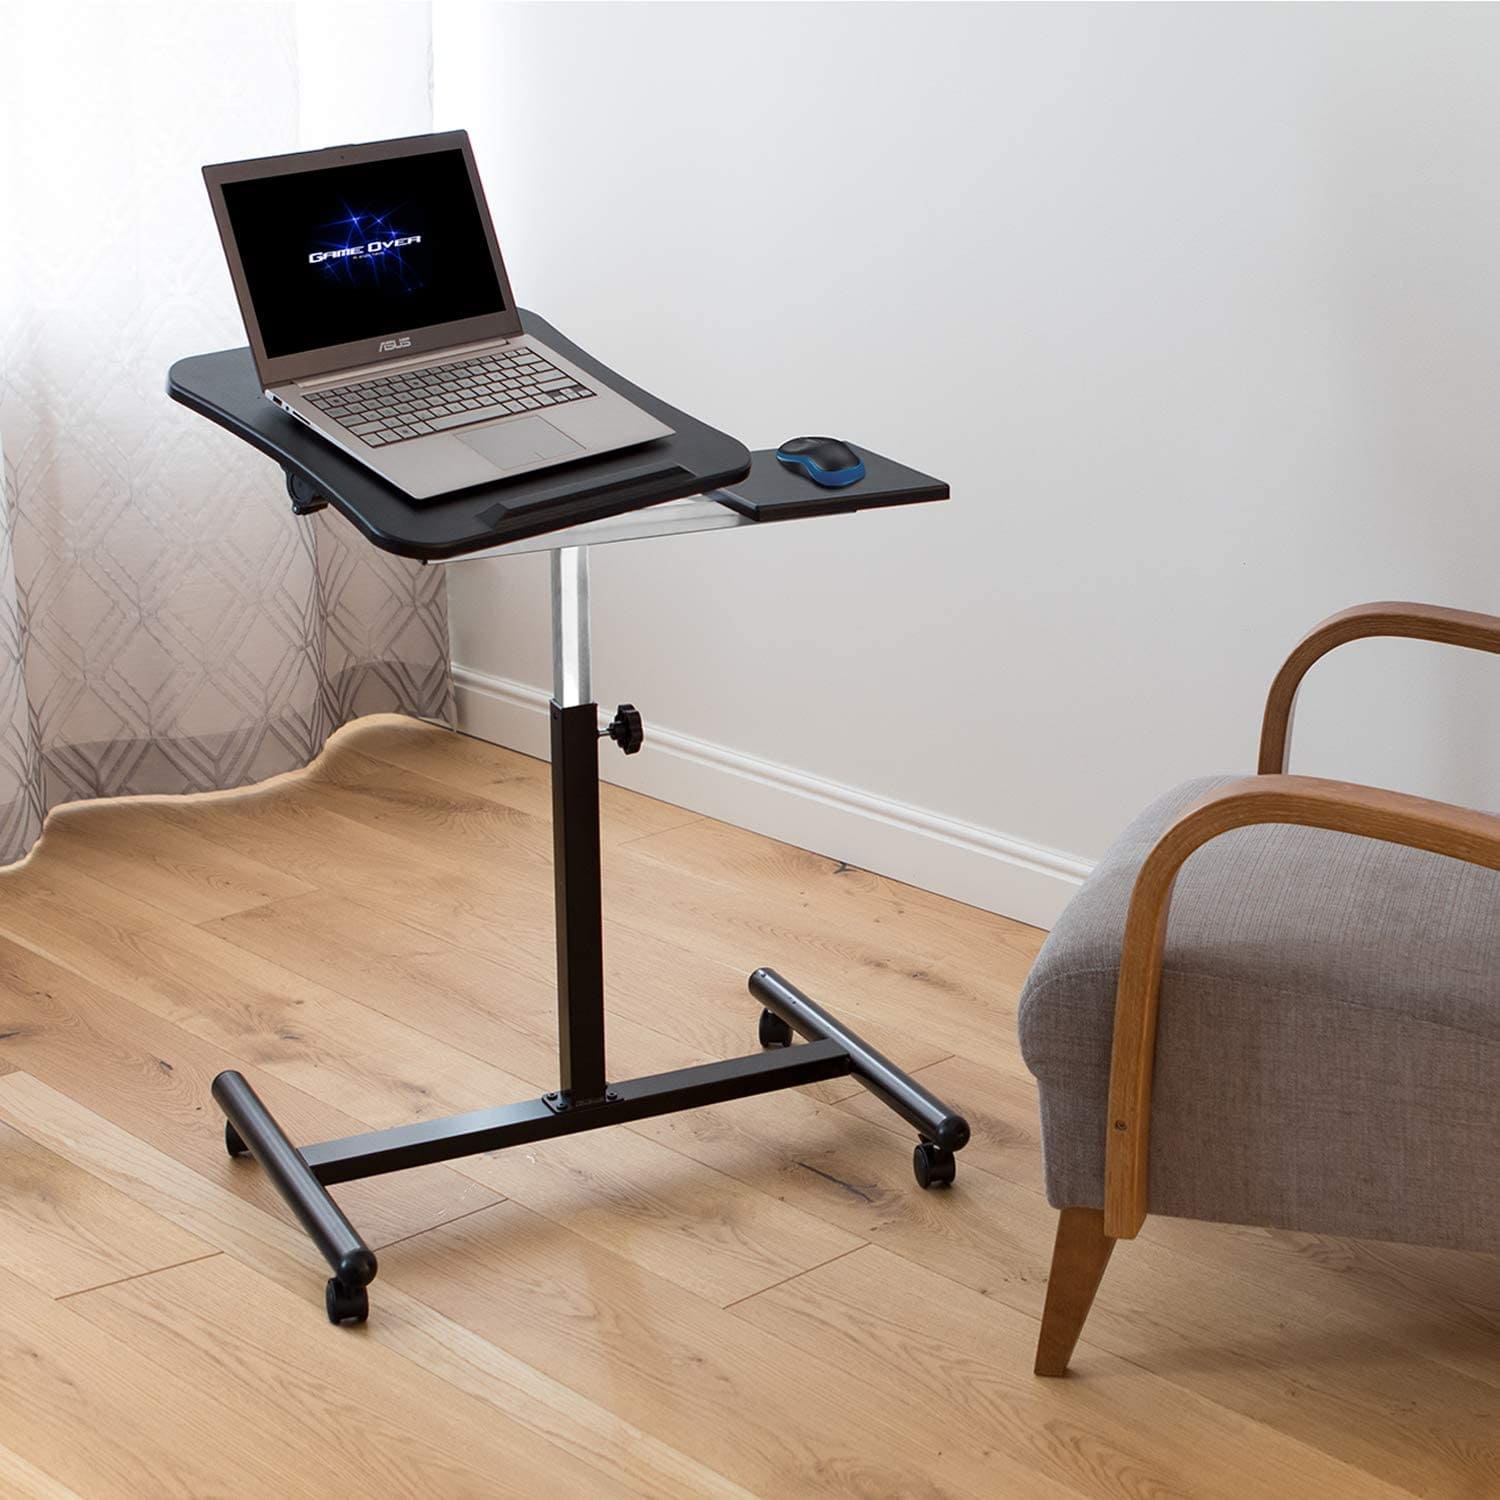 Tatkraft Vanessa - Table ordinateur portable à roulettes, Pour gaucher et droitier, Table de lit roulante, Noir